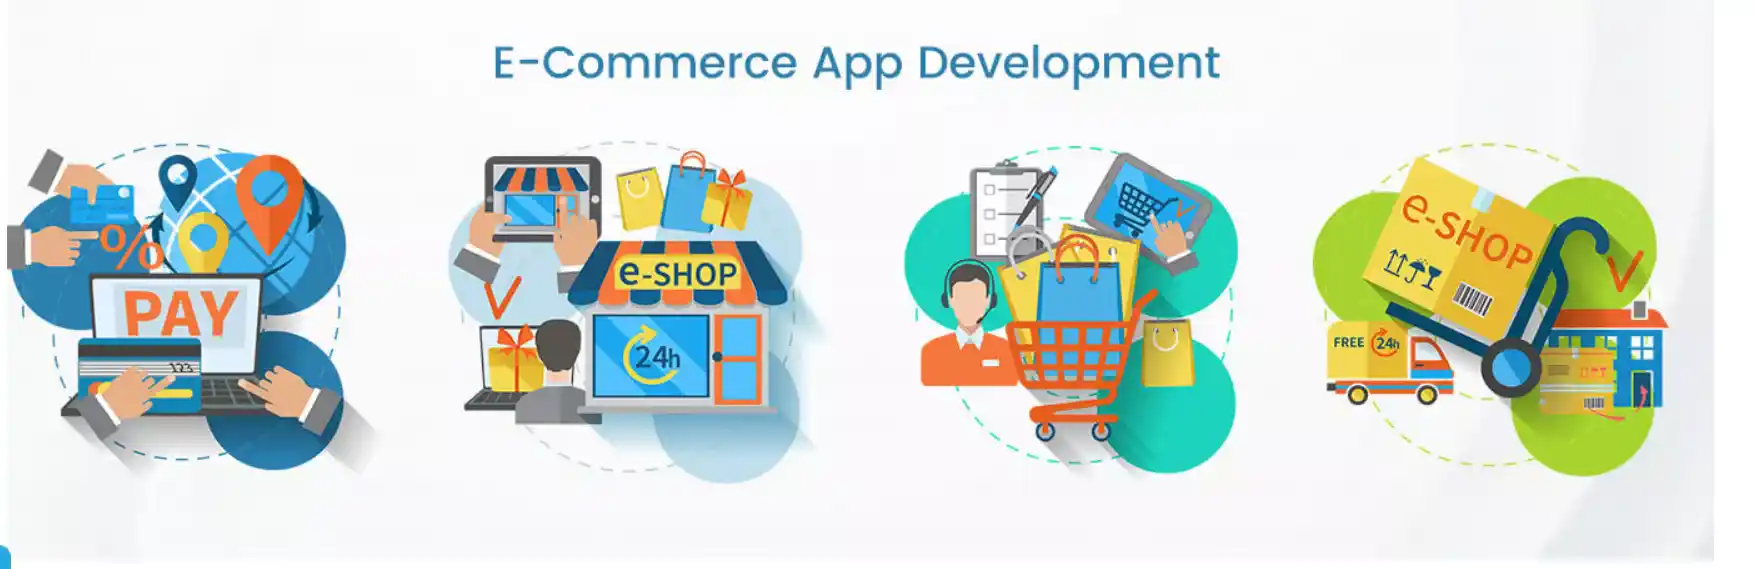 E-commerce App Development 